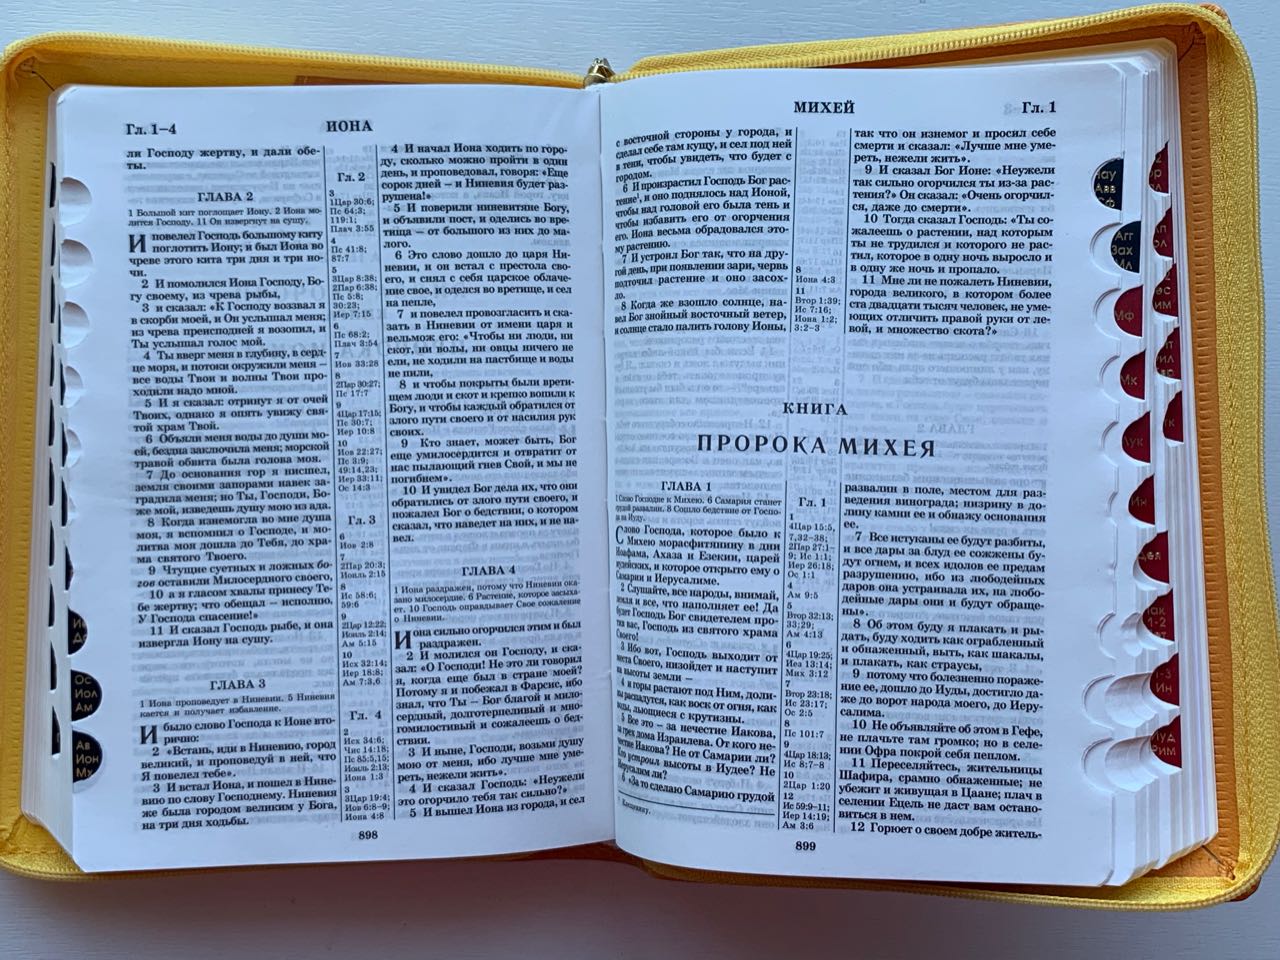 БИБЛИЯ 046zti формат, переплет из искусственной кожи на молнии с индексами, надпись золотом "Библия", цвет желтый/салатовый, средний формат, 132*182 мм, цветные карты, шрифт 12 кегель